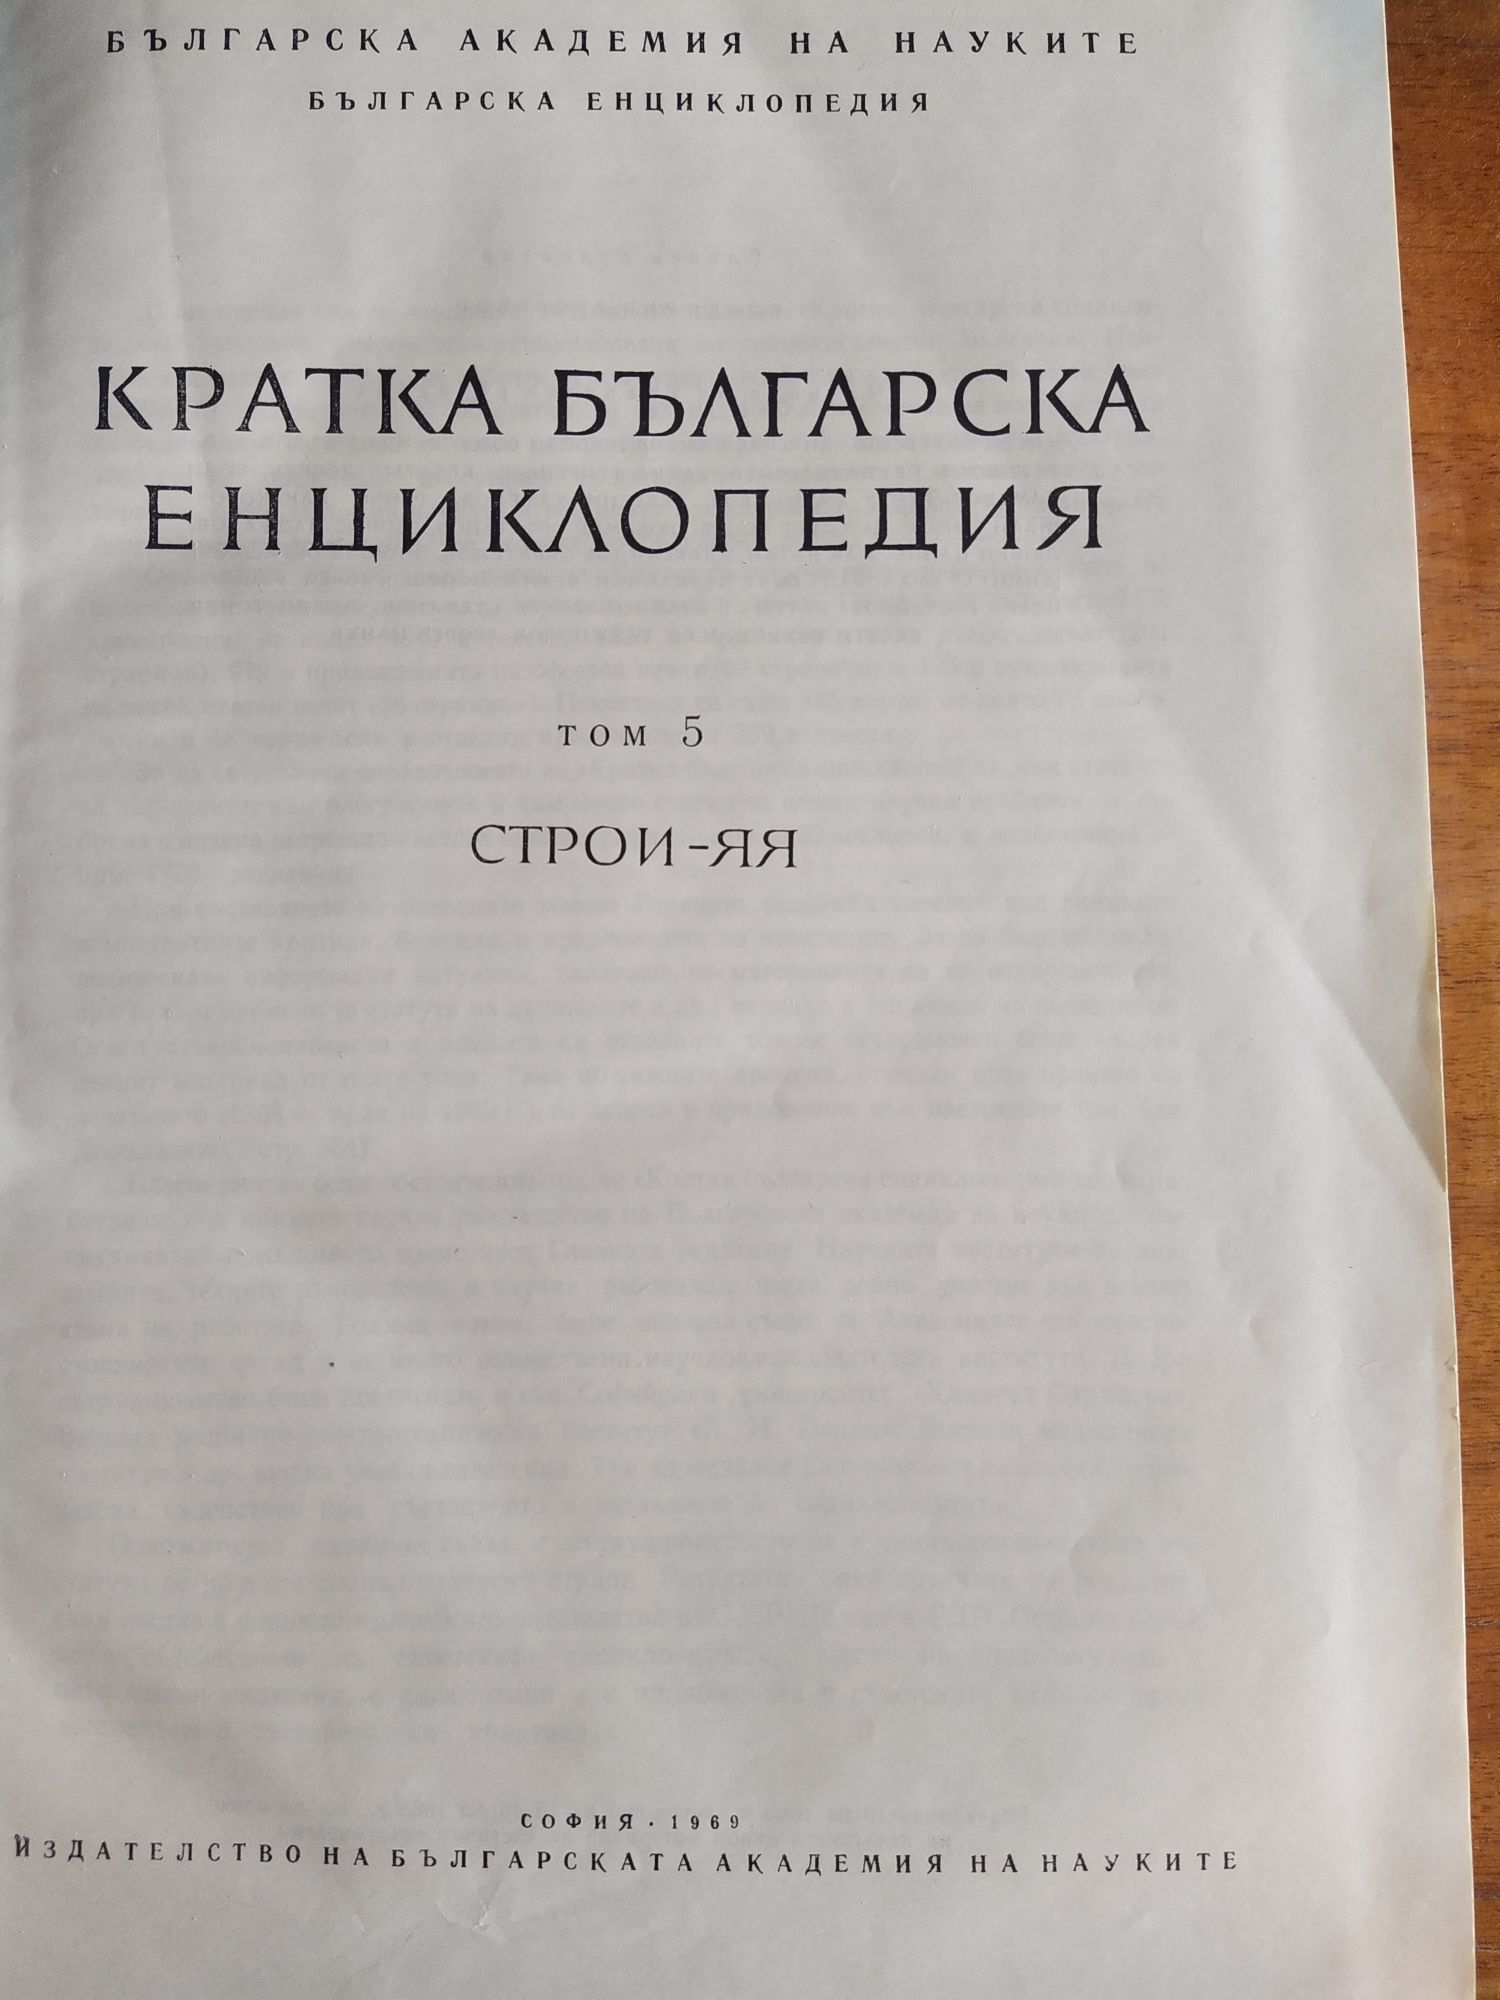 Кратка българска енциклопедия 1963/1969 г.